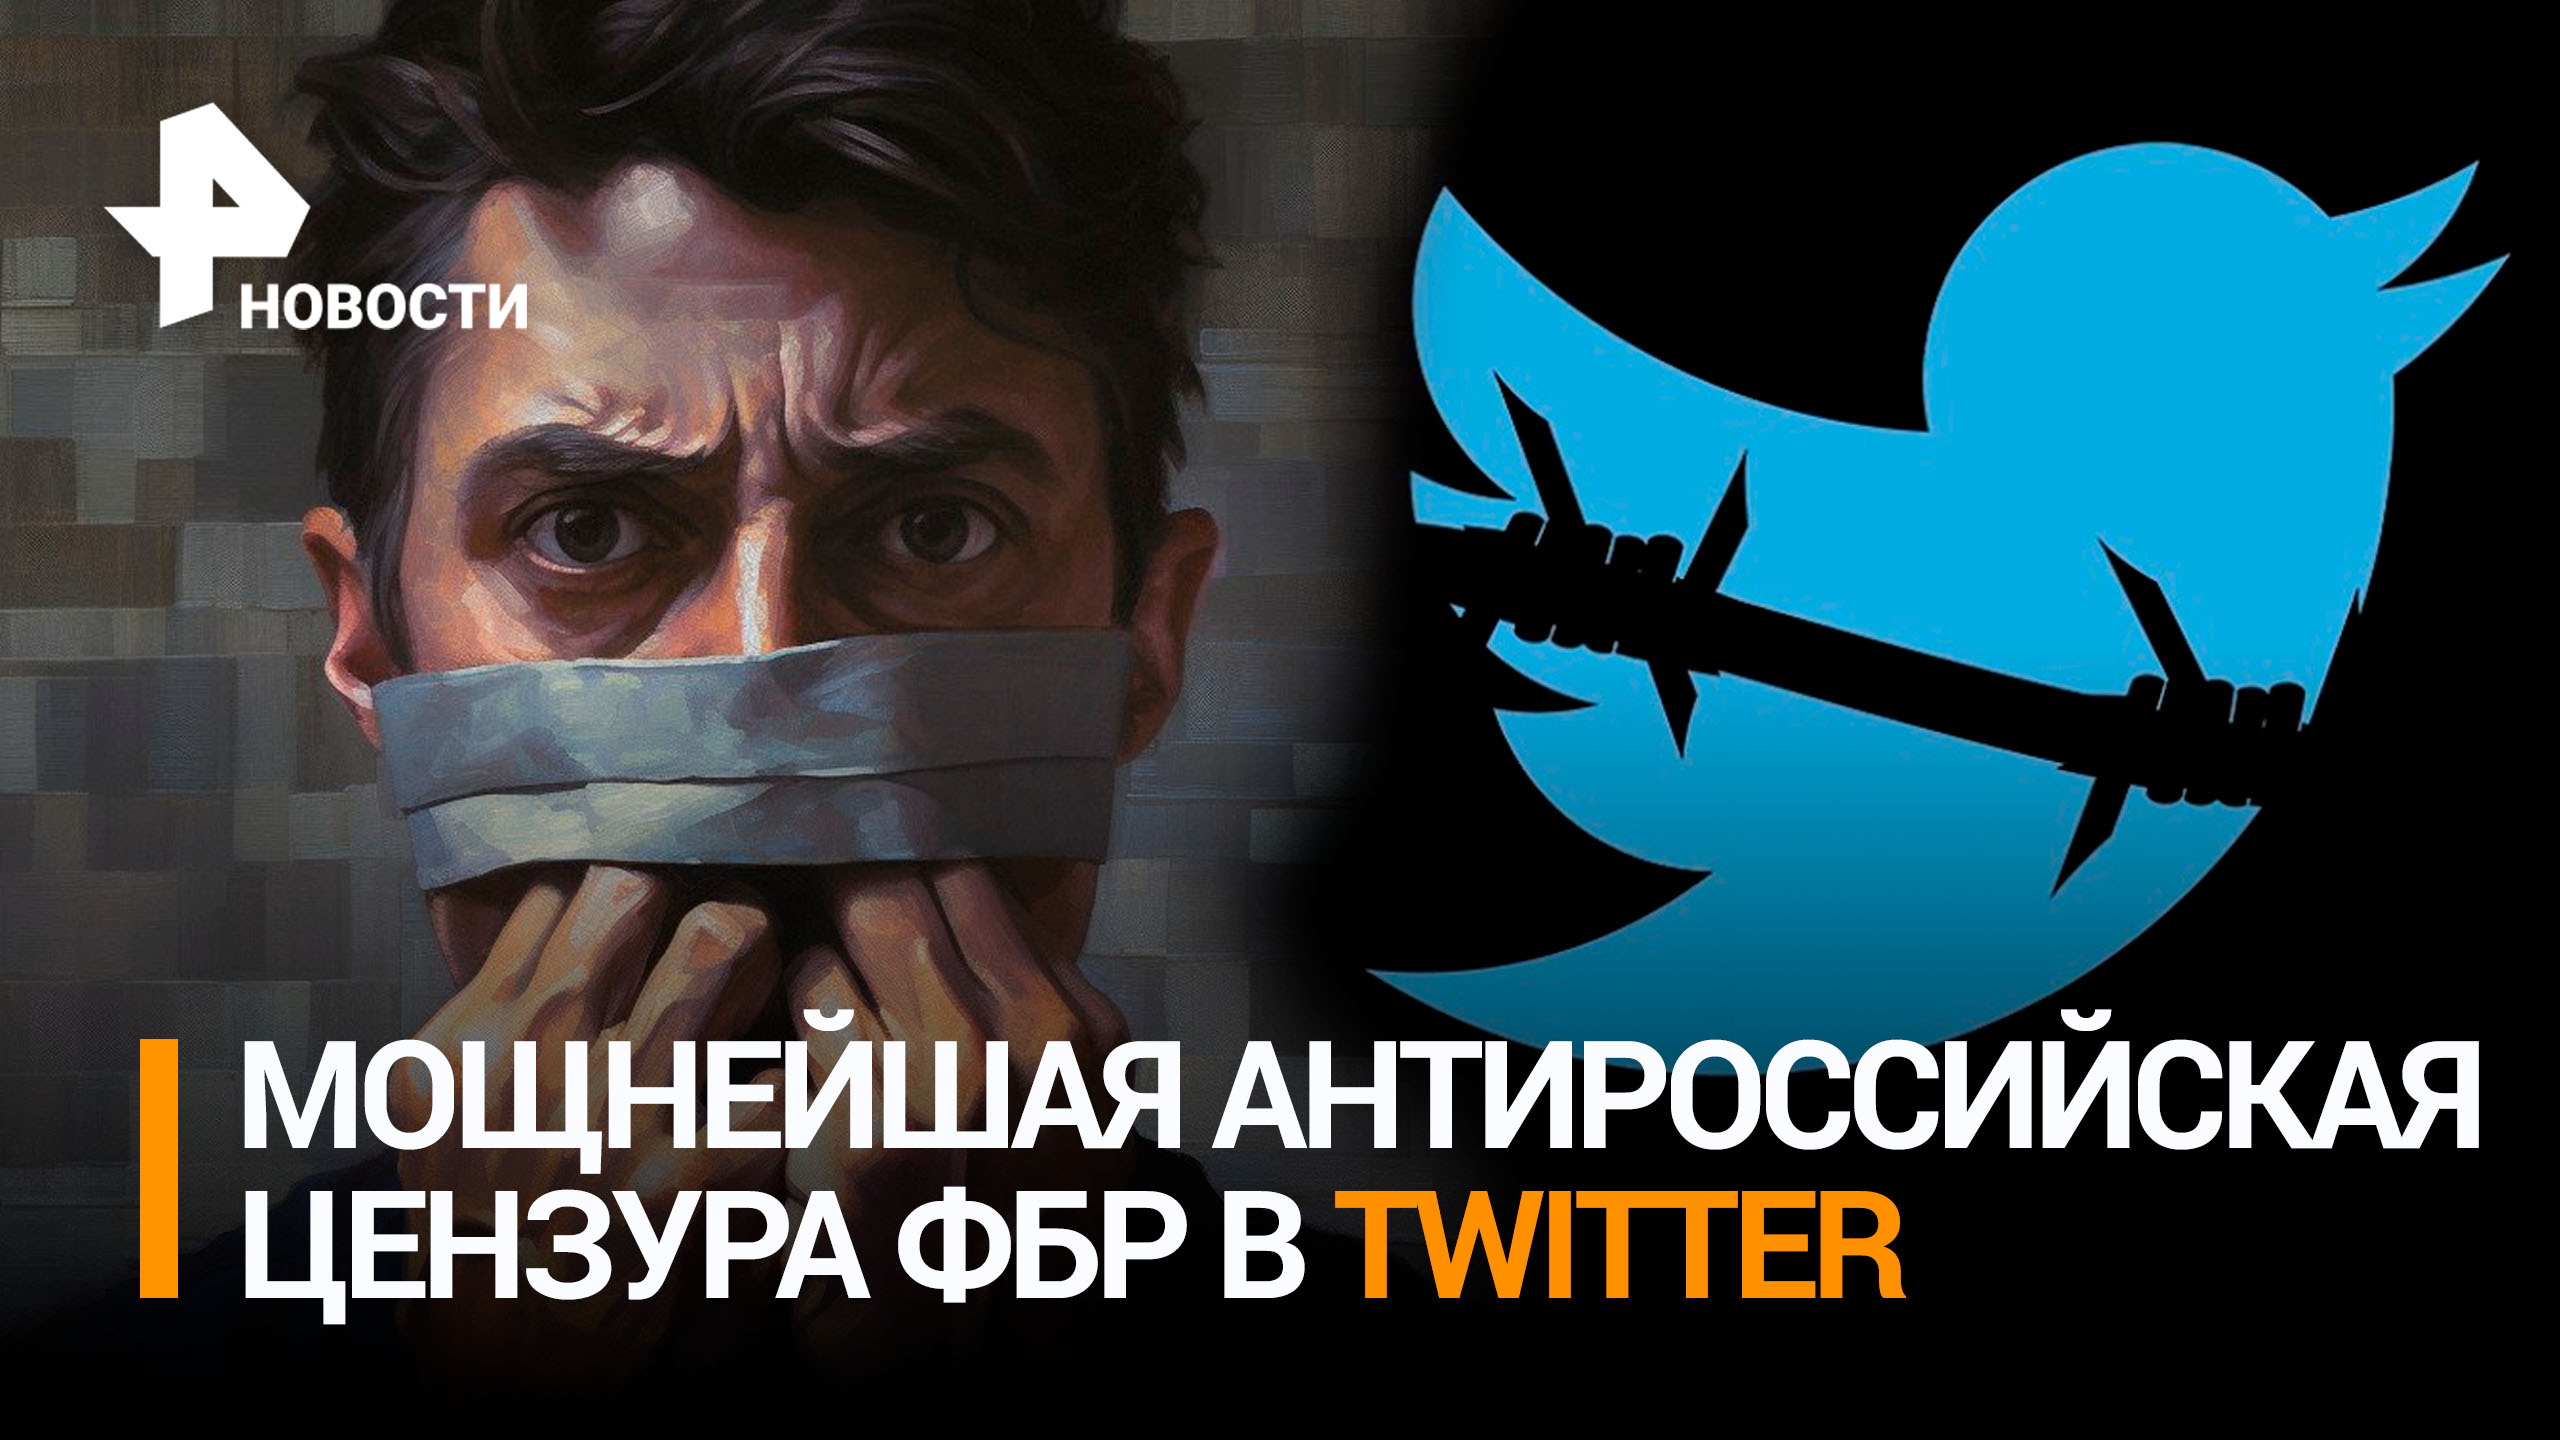 ФБР помогал Киеву удалять "неугодные" материалы и аккаунты в Twitter / РЕН Новости